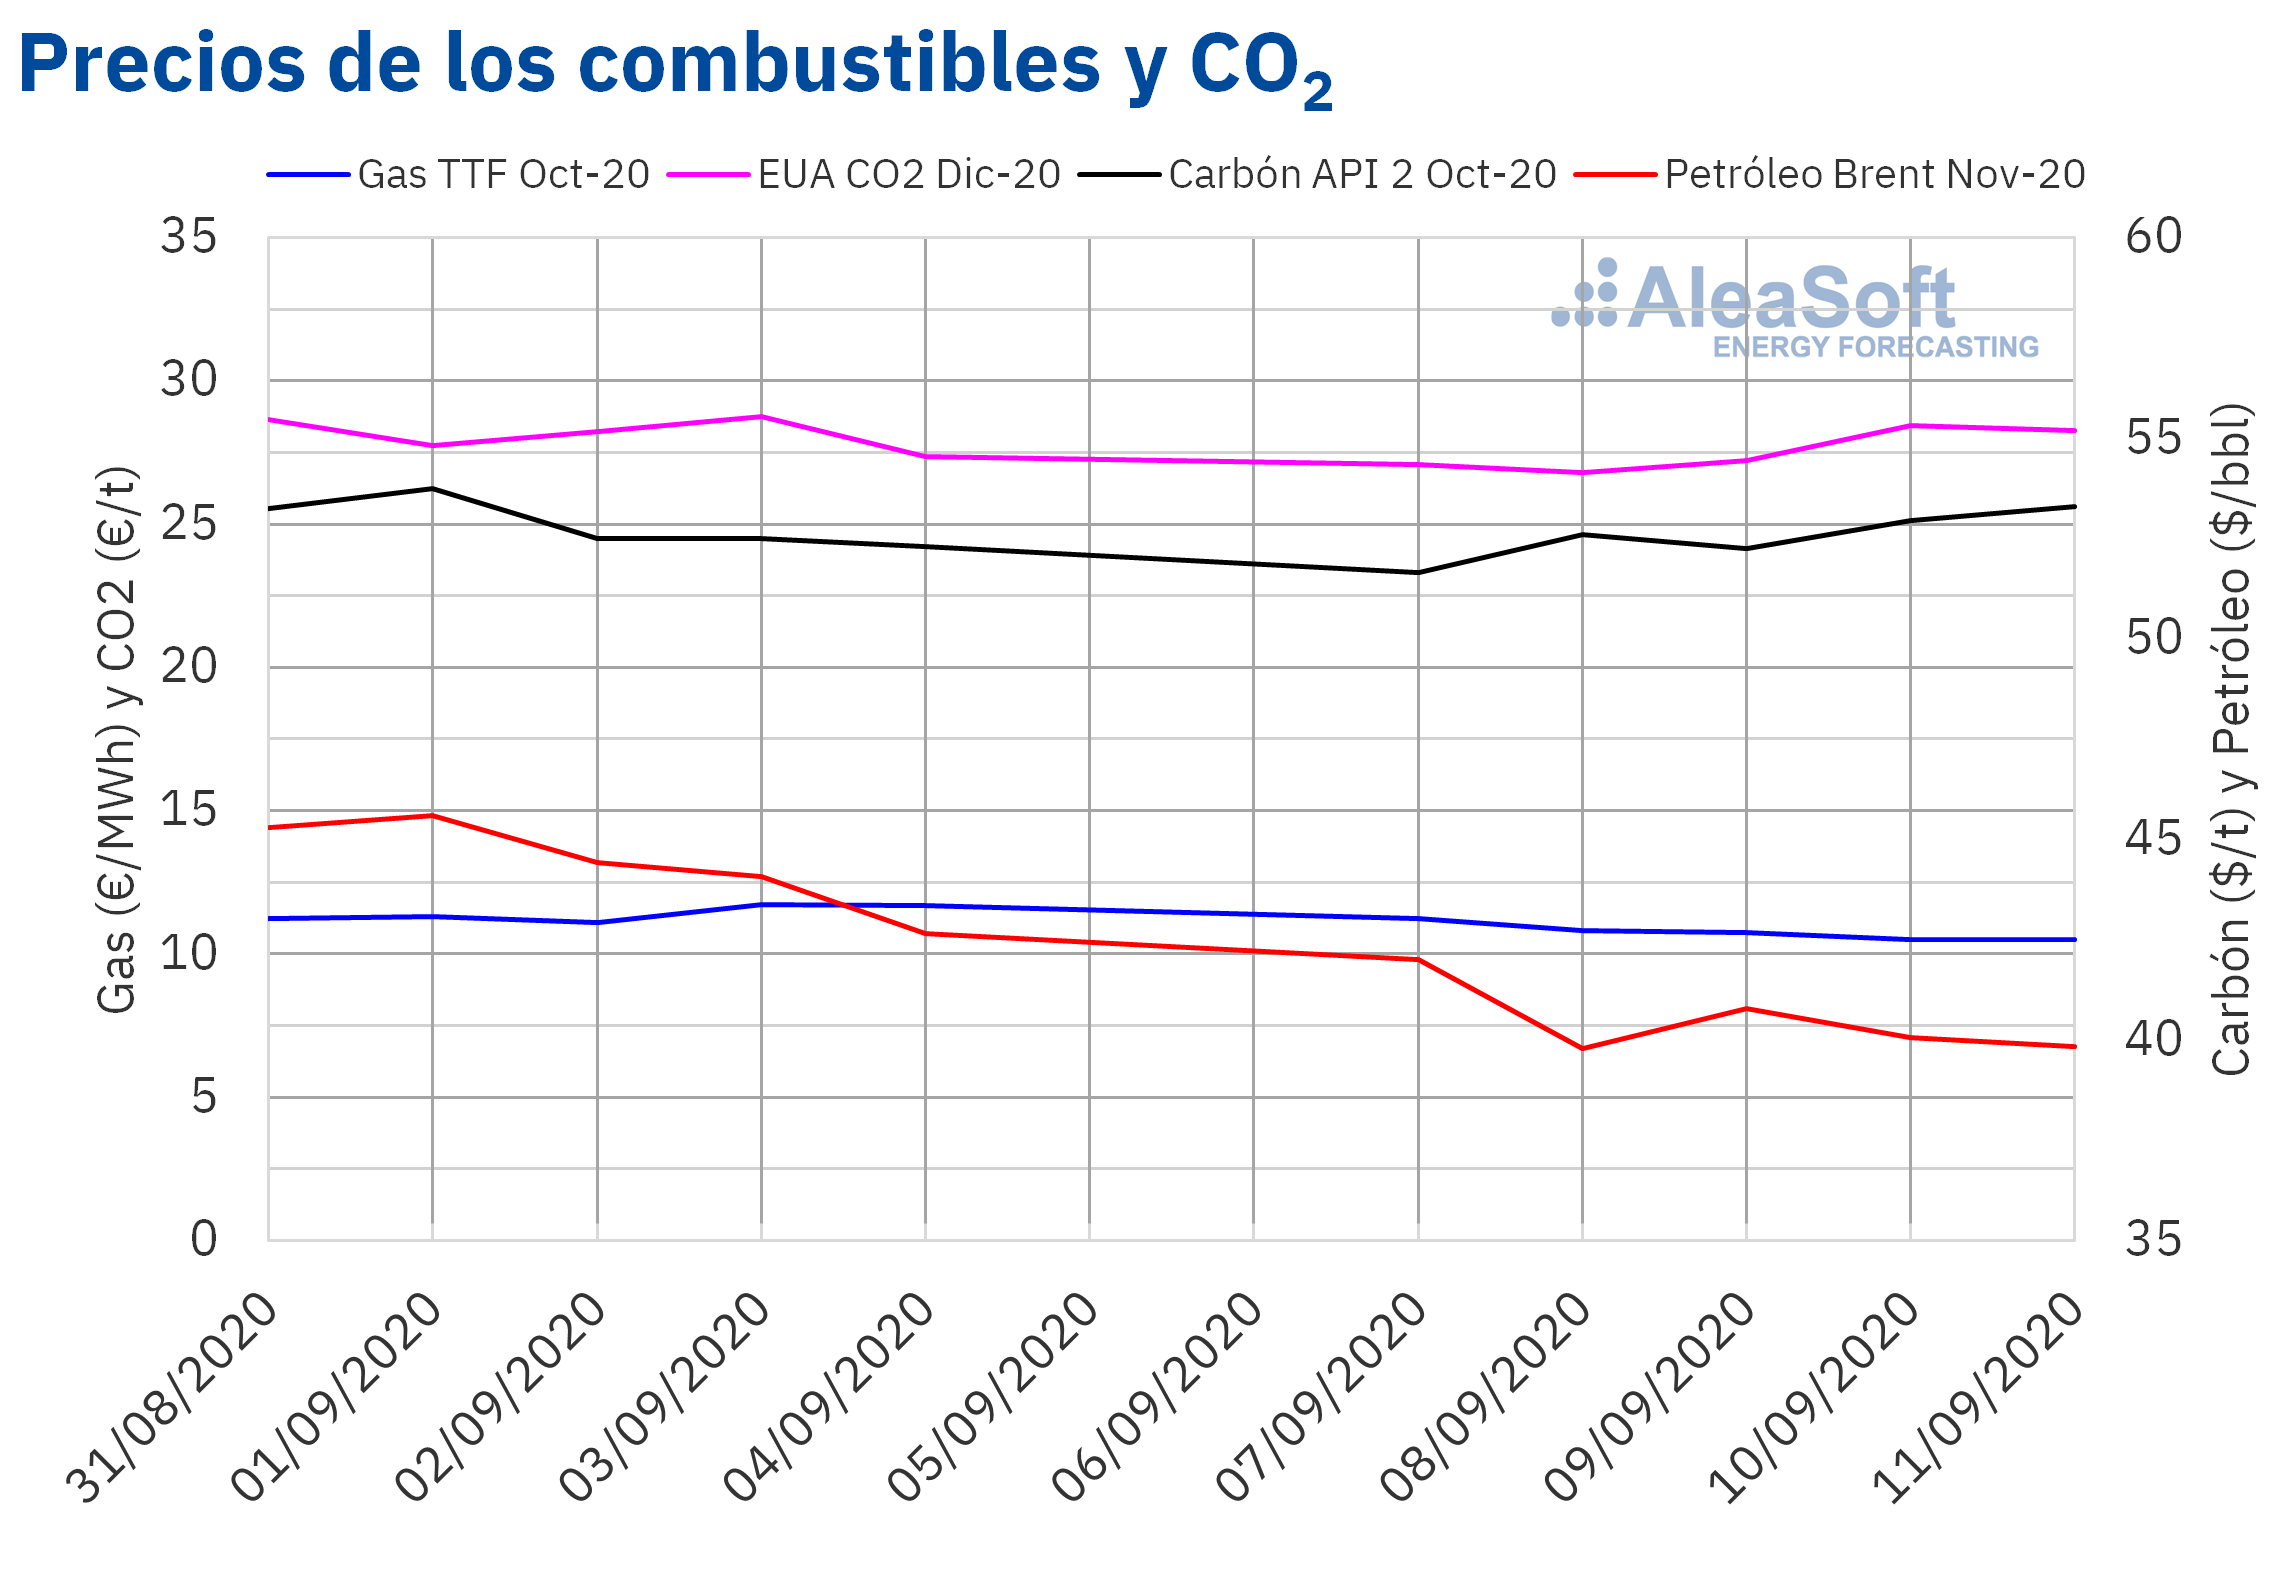 AleaSoft - Precios de gas, carbón Brent y CO2